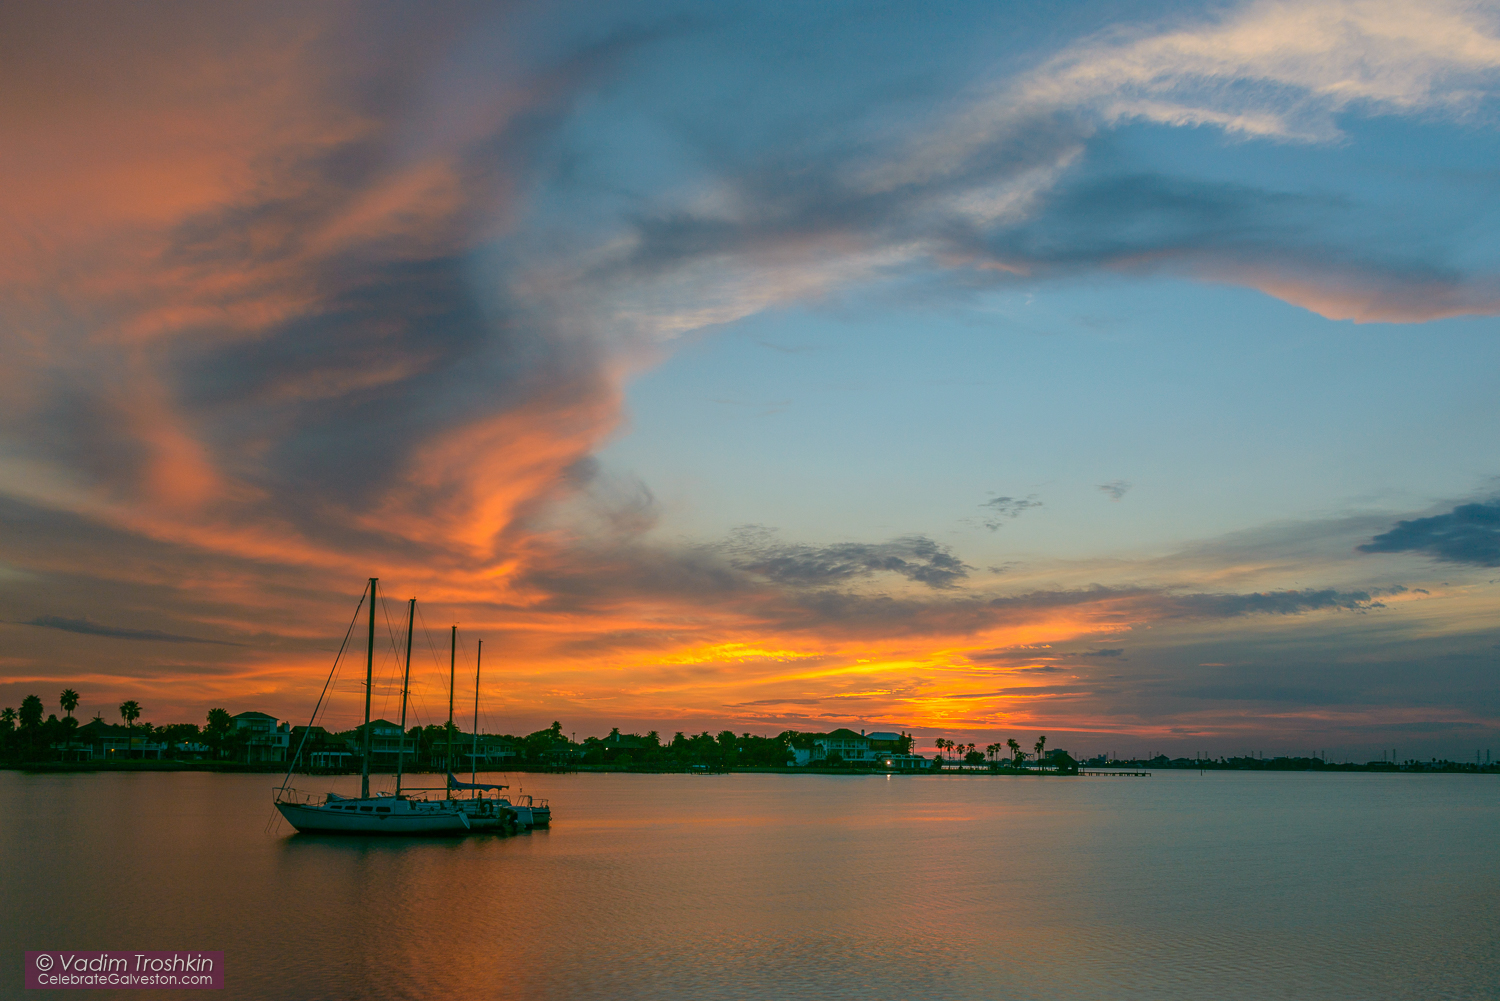 August 25, 2015 #Galveston #Sunset 